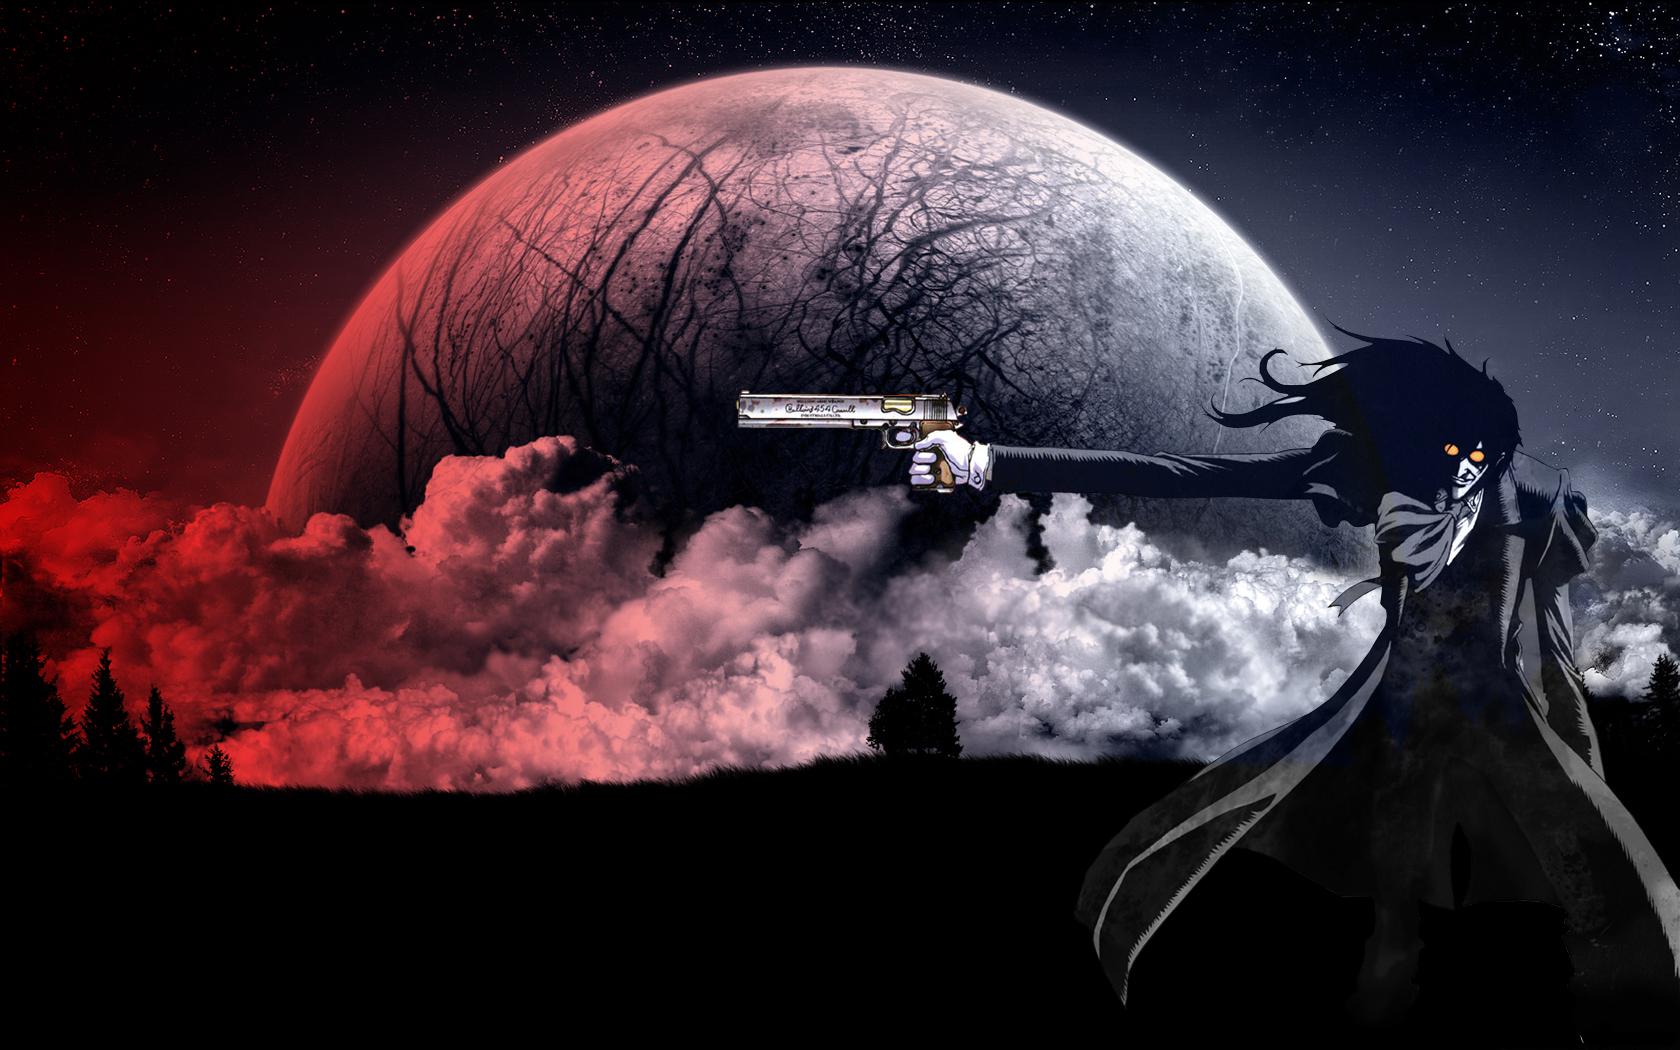 Hellsing's Alucard radiates power and intensity in this stunning anime-inspired desktop wallpaper.